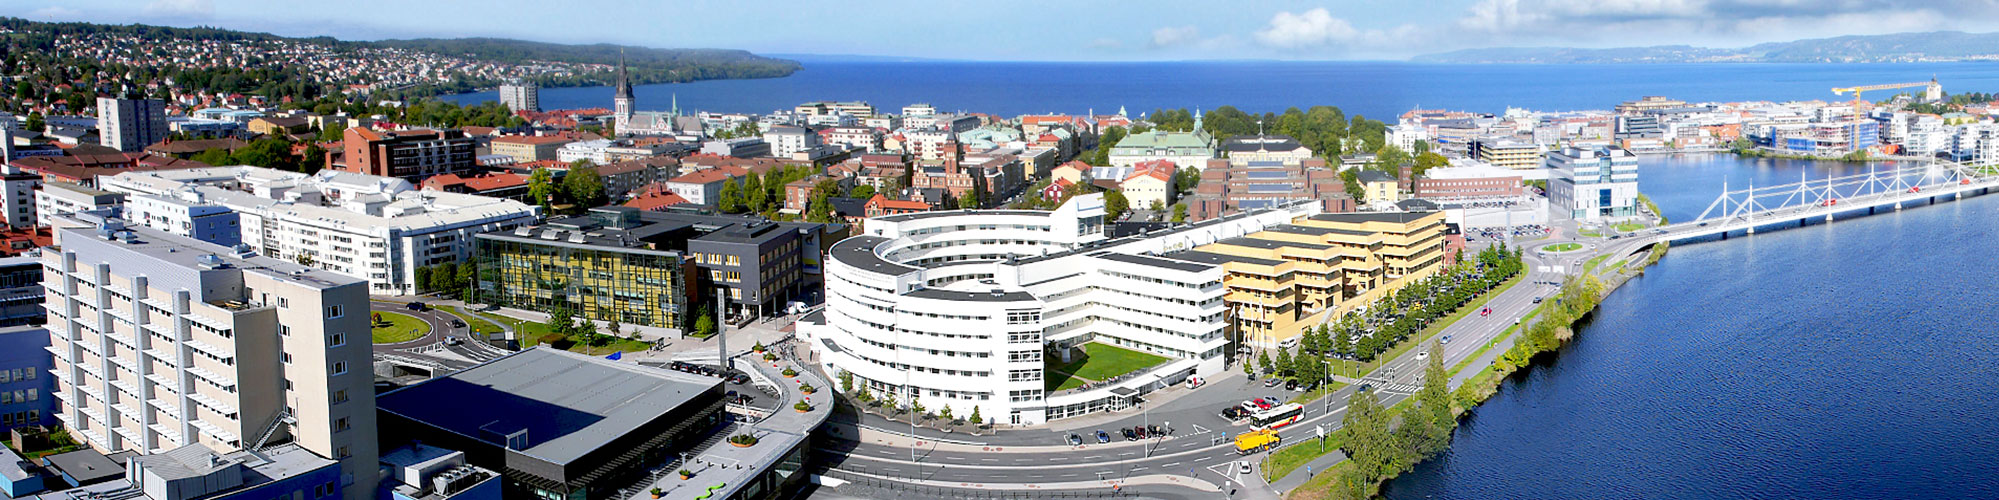 About us - About the University - Jönköping University